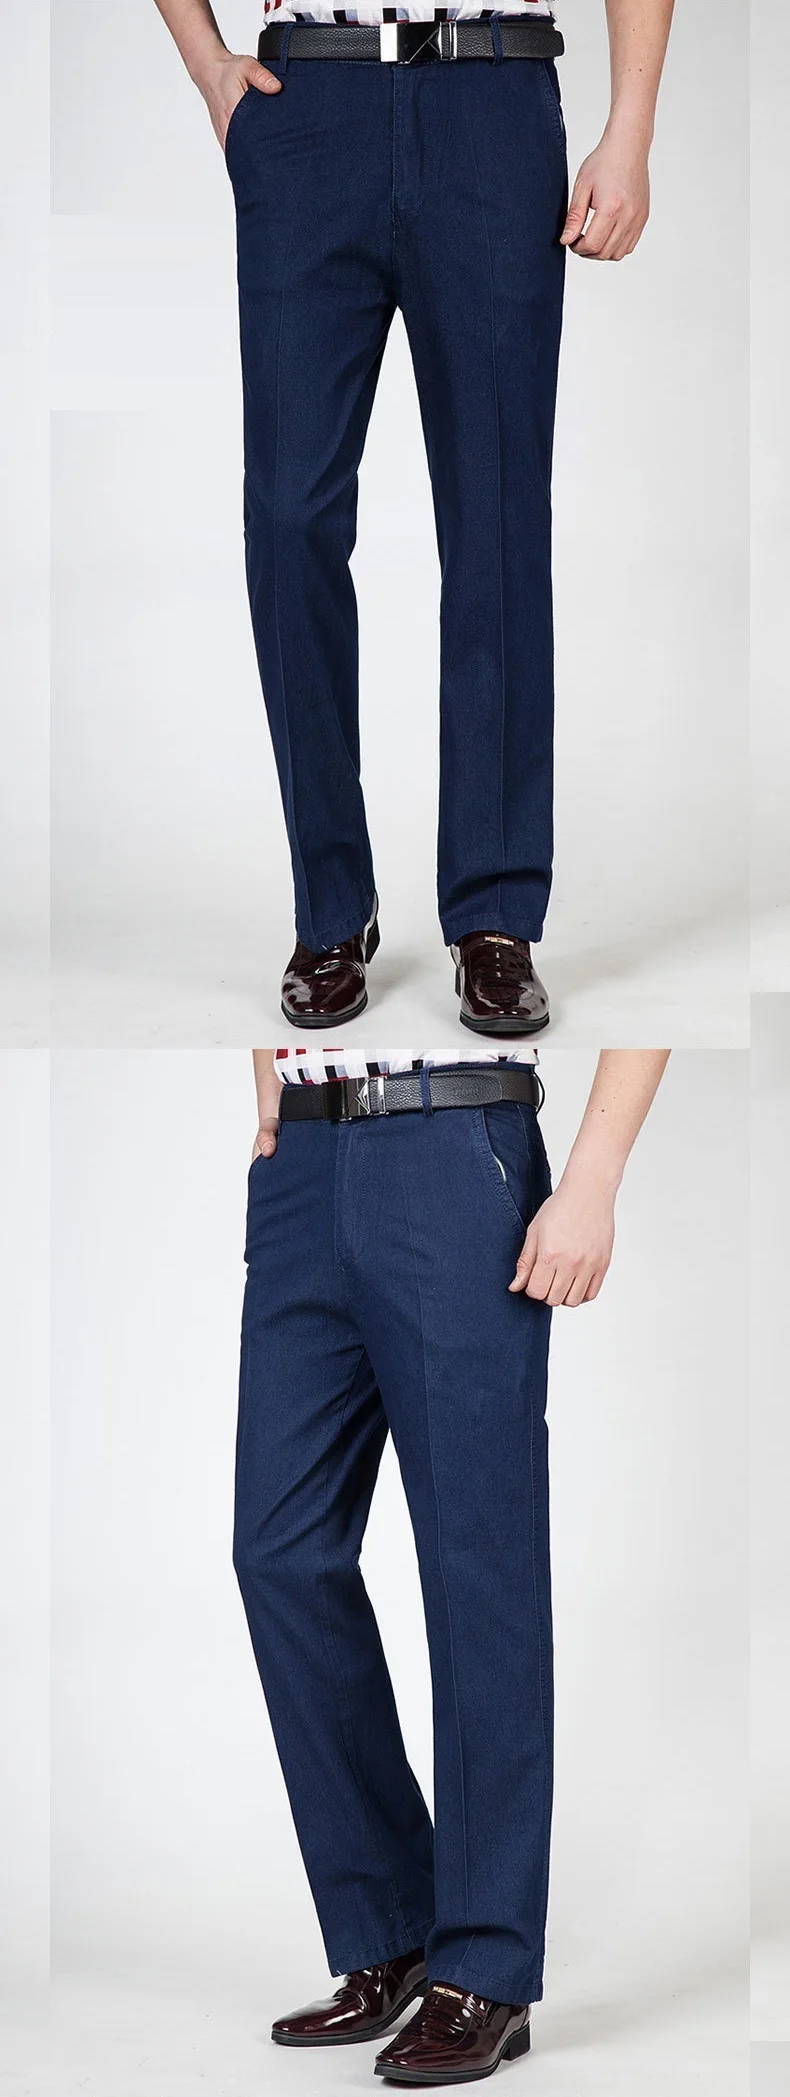 Плюс большие размеры 5XL мужские джинсы повседневные штаны Классический Бизнес Высокая талия Формальная работа длинные штаны Летние slim fit